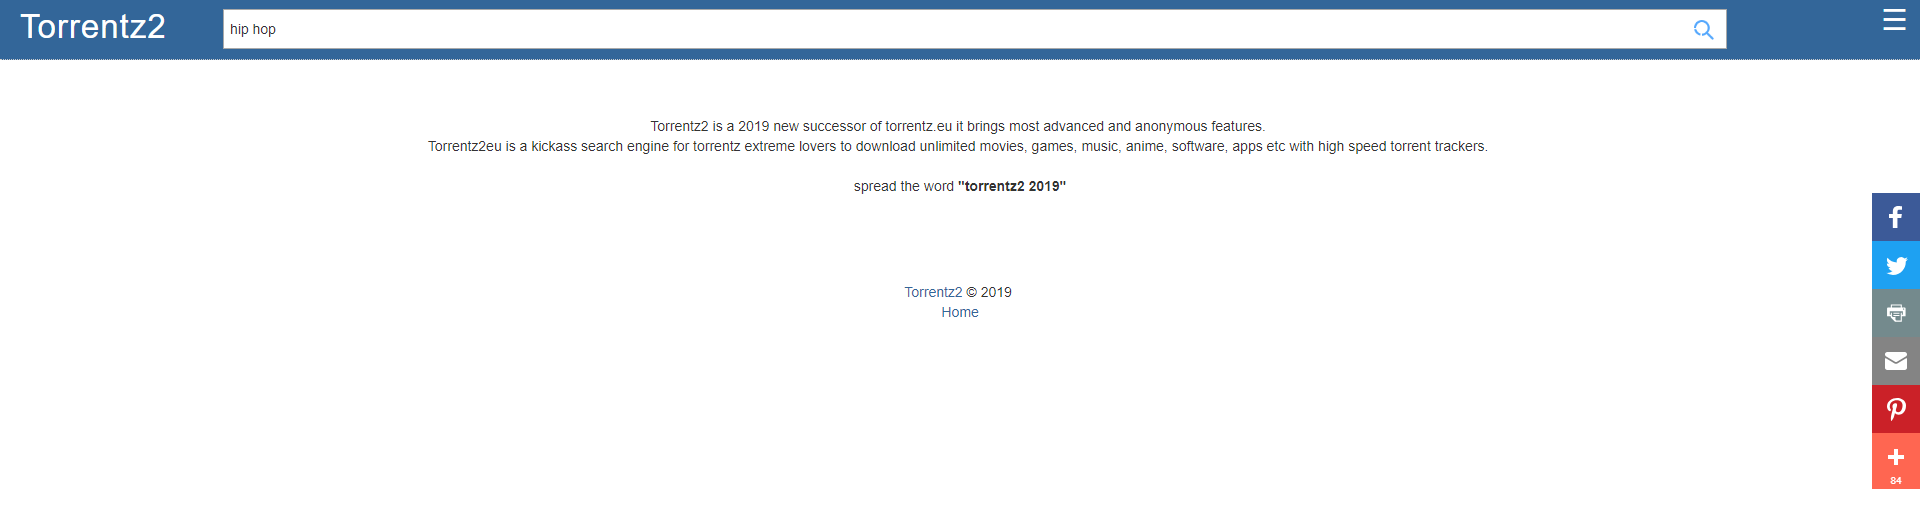 TorrentZ2 website screenshot